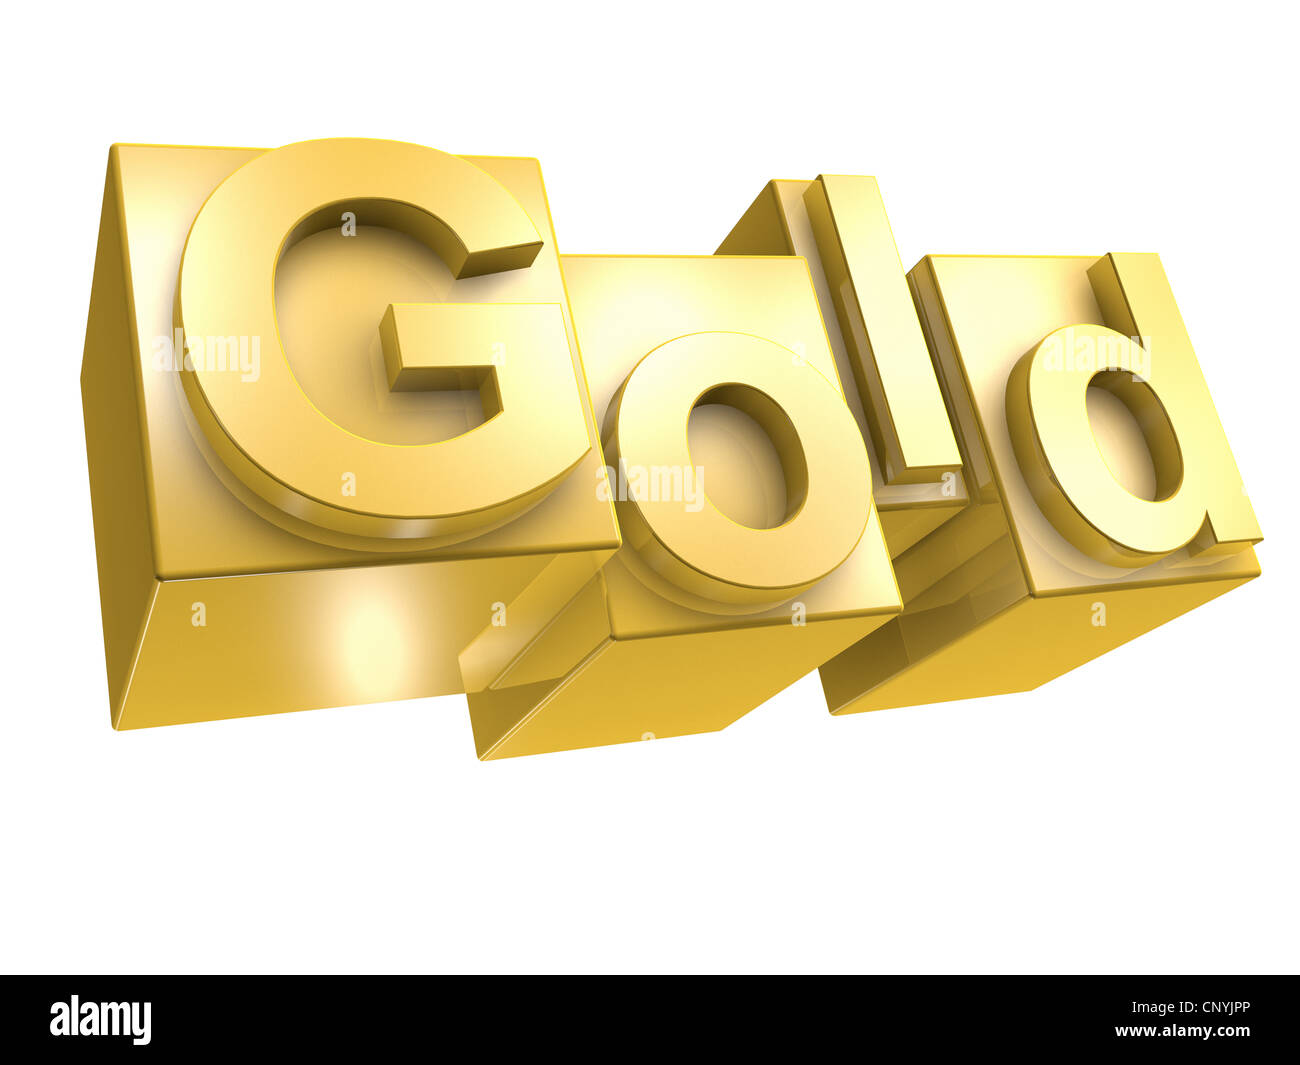 Das Wort GOLD im goldenen 3D Buchstaben auf weißem Hintergrund - Das Wort GOLD aus 3D Buchstaben gesetzt Stockfoto